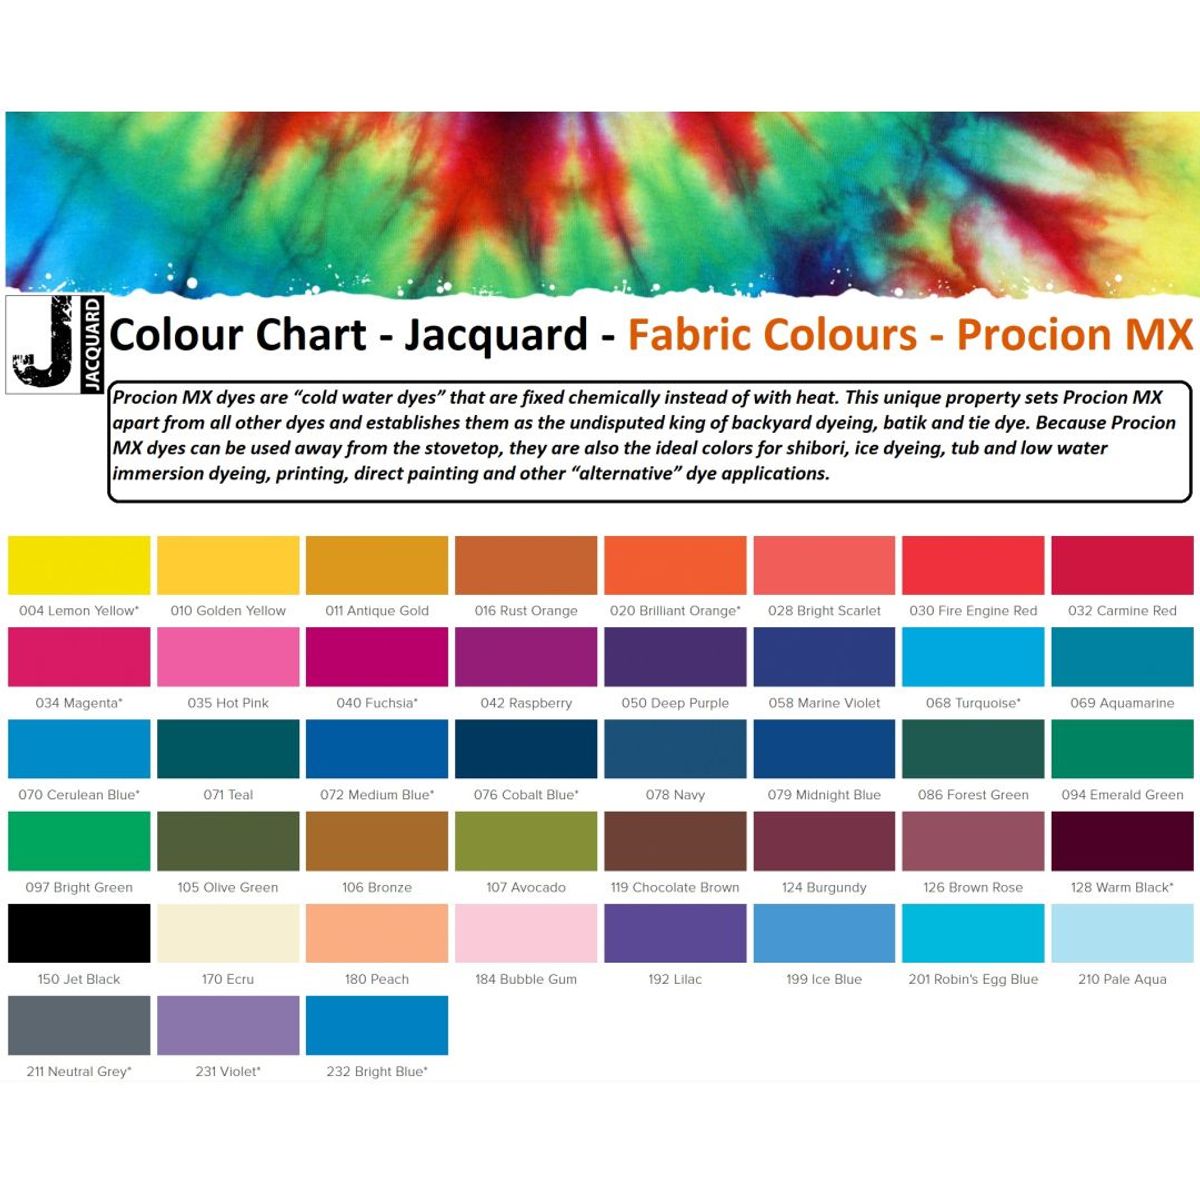 Jacquard - Procion MX Dye - Fabric Textile - Jet Black 150